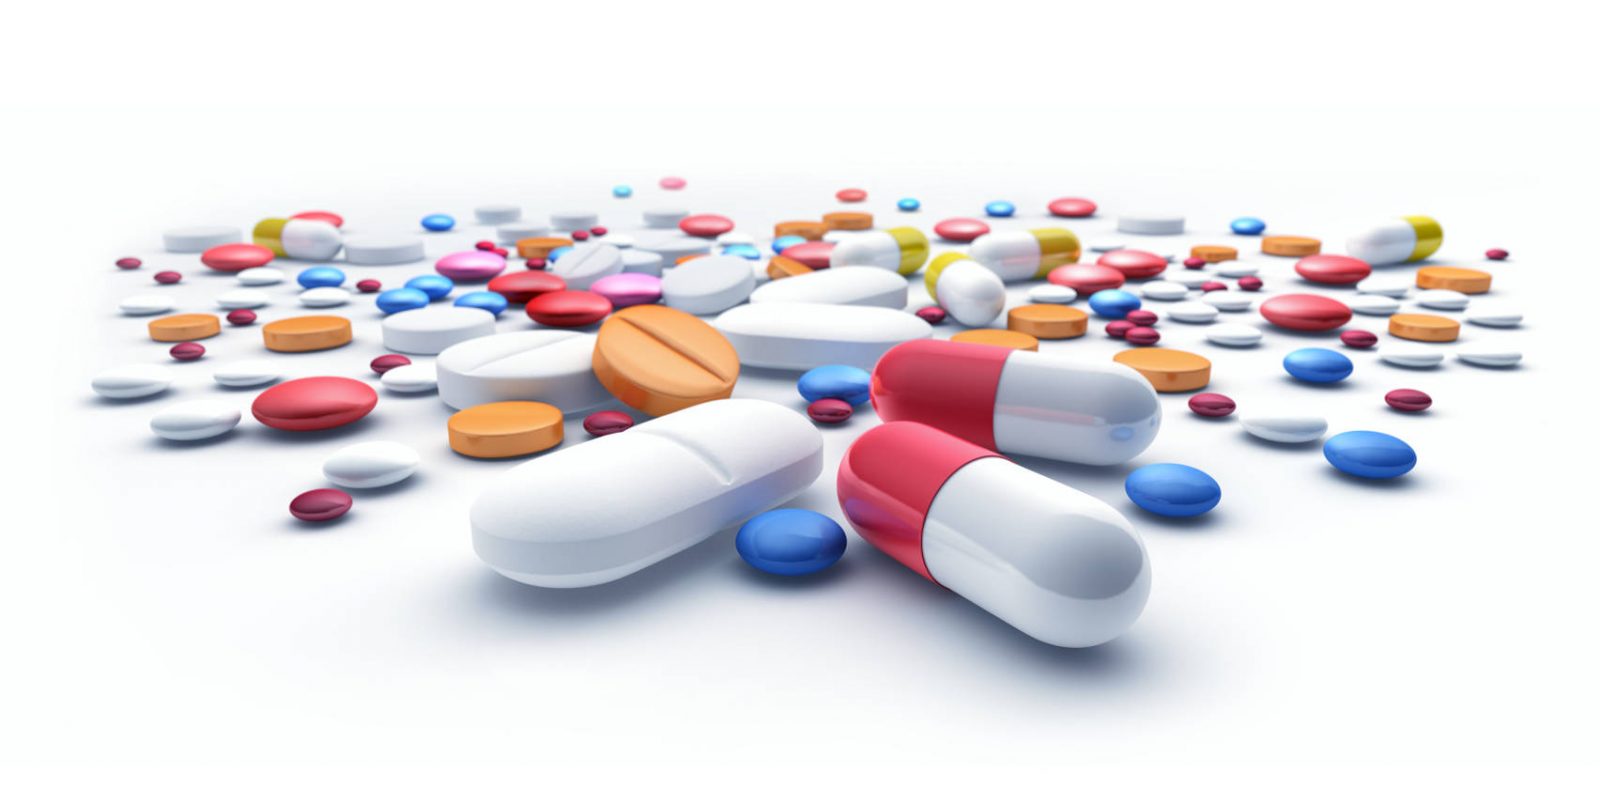 Arzneimittel: Kennzeichnung auf Packung oft irreführend